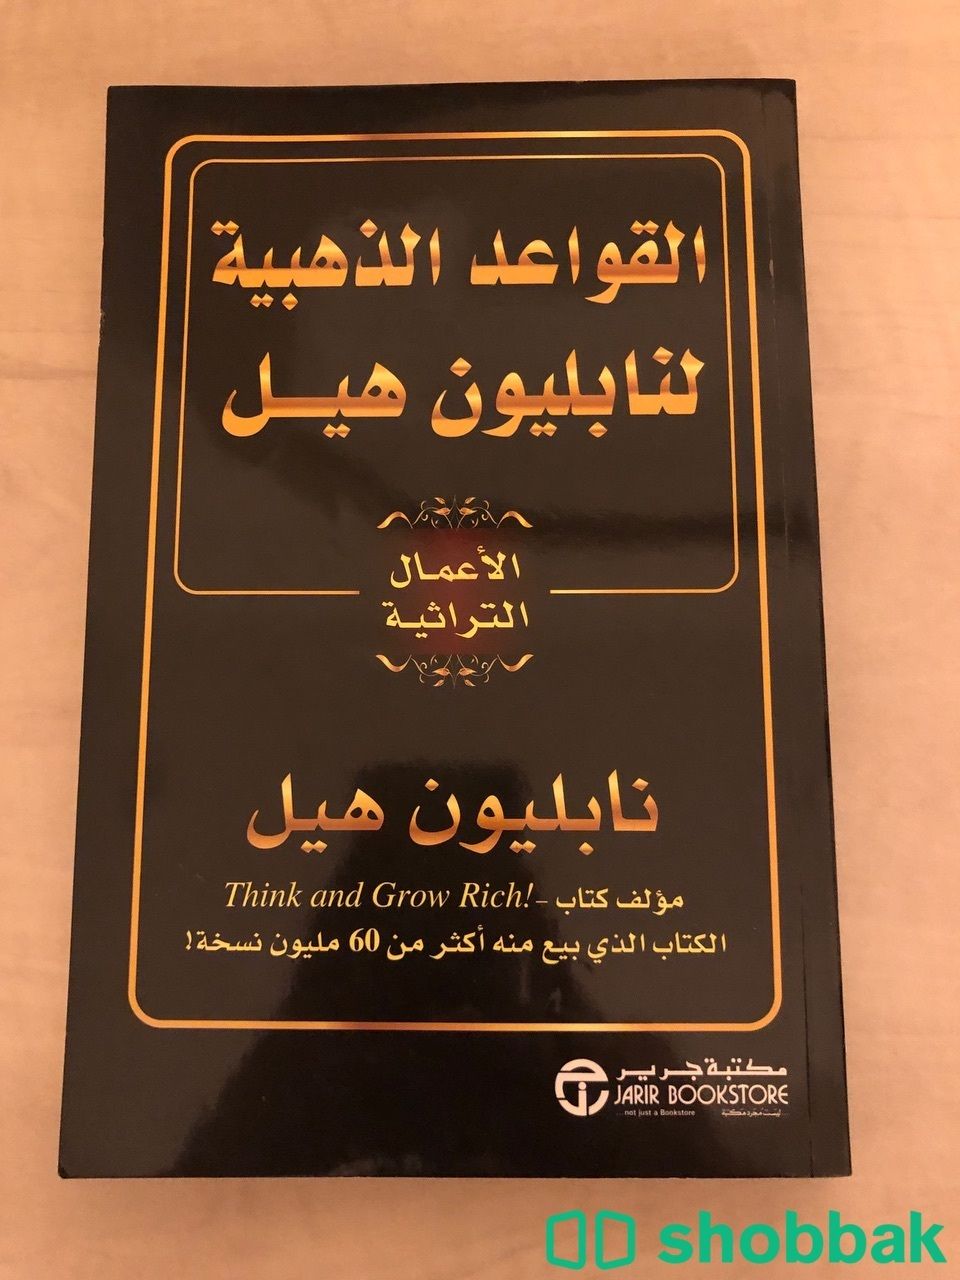 كتاب القواعد الذهبية لنابليون هيل50 Shobbak Saudi Arabia